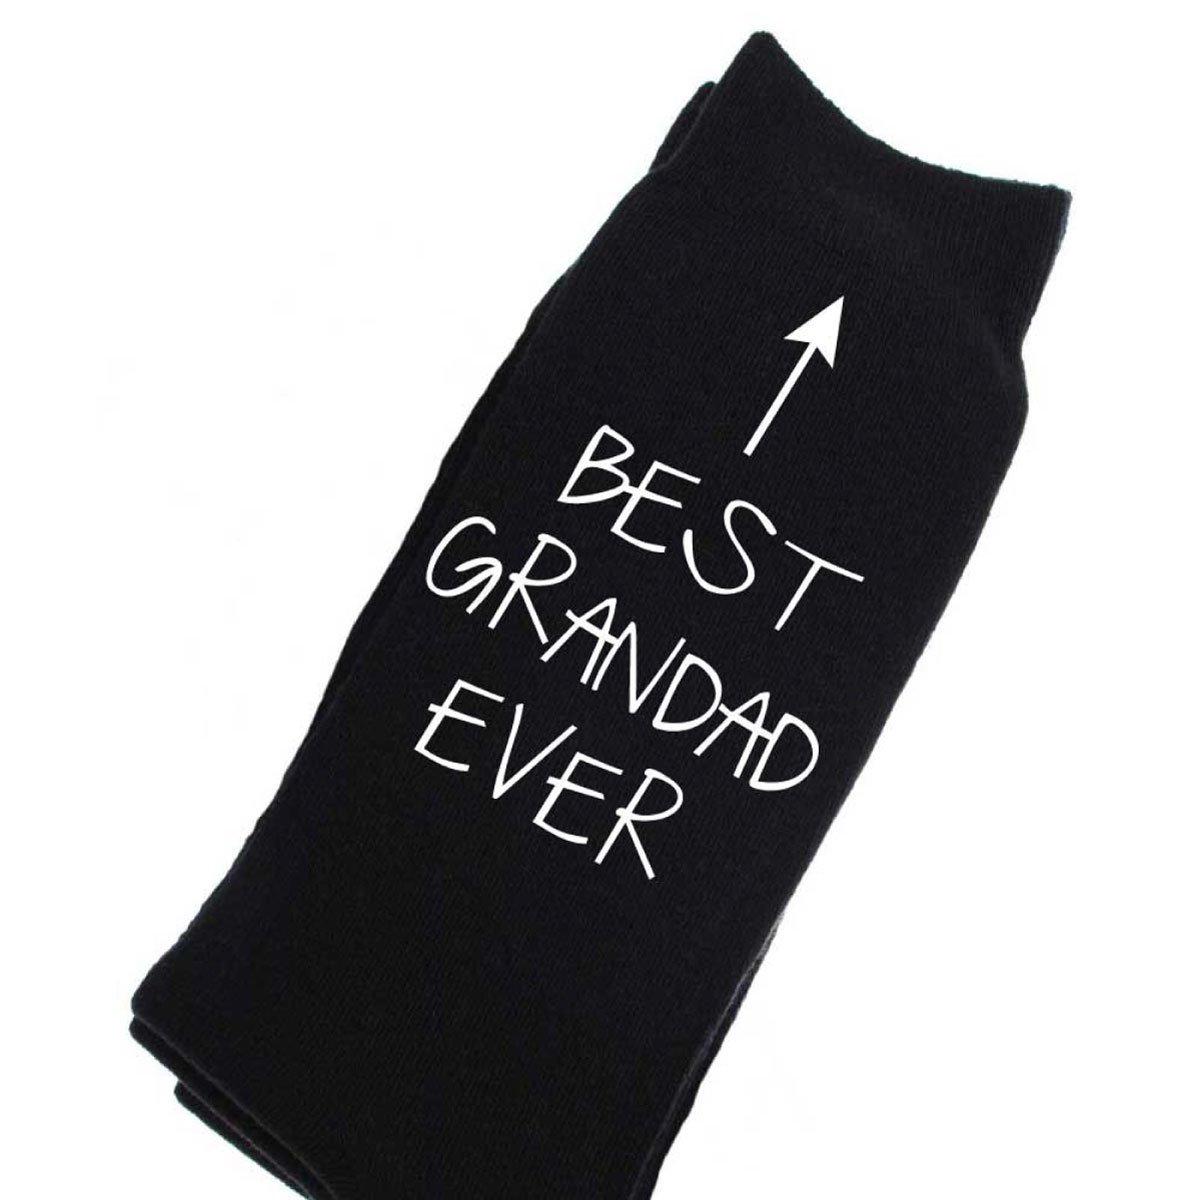 черные носки до щиколотки best dad ever period 60 second makeover черный Черные носки до голени Best Grandad Ever 60 SECOND MAKEOVER, черный